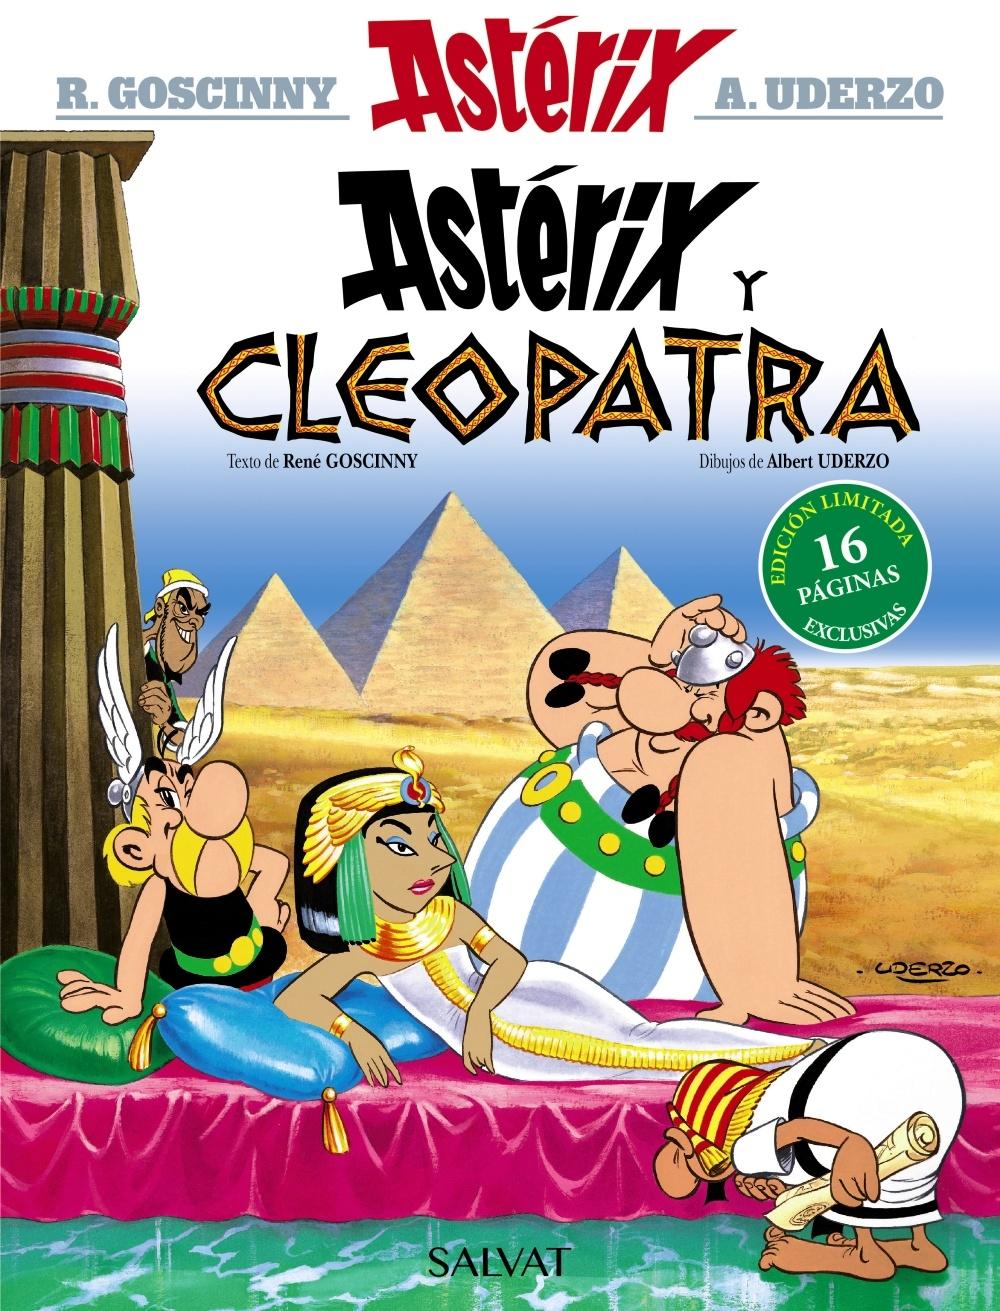 Astérix y Cleopatra. Edición 2021 "Astérix 6". 